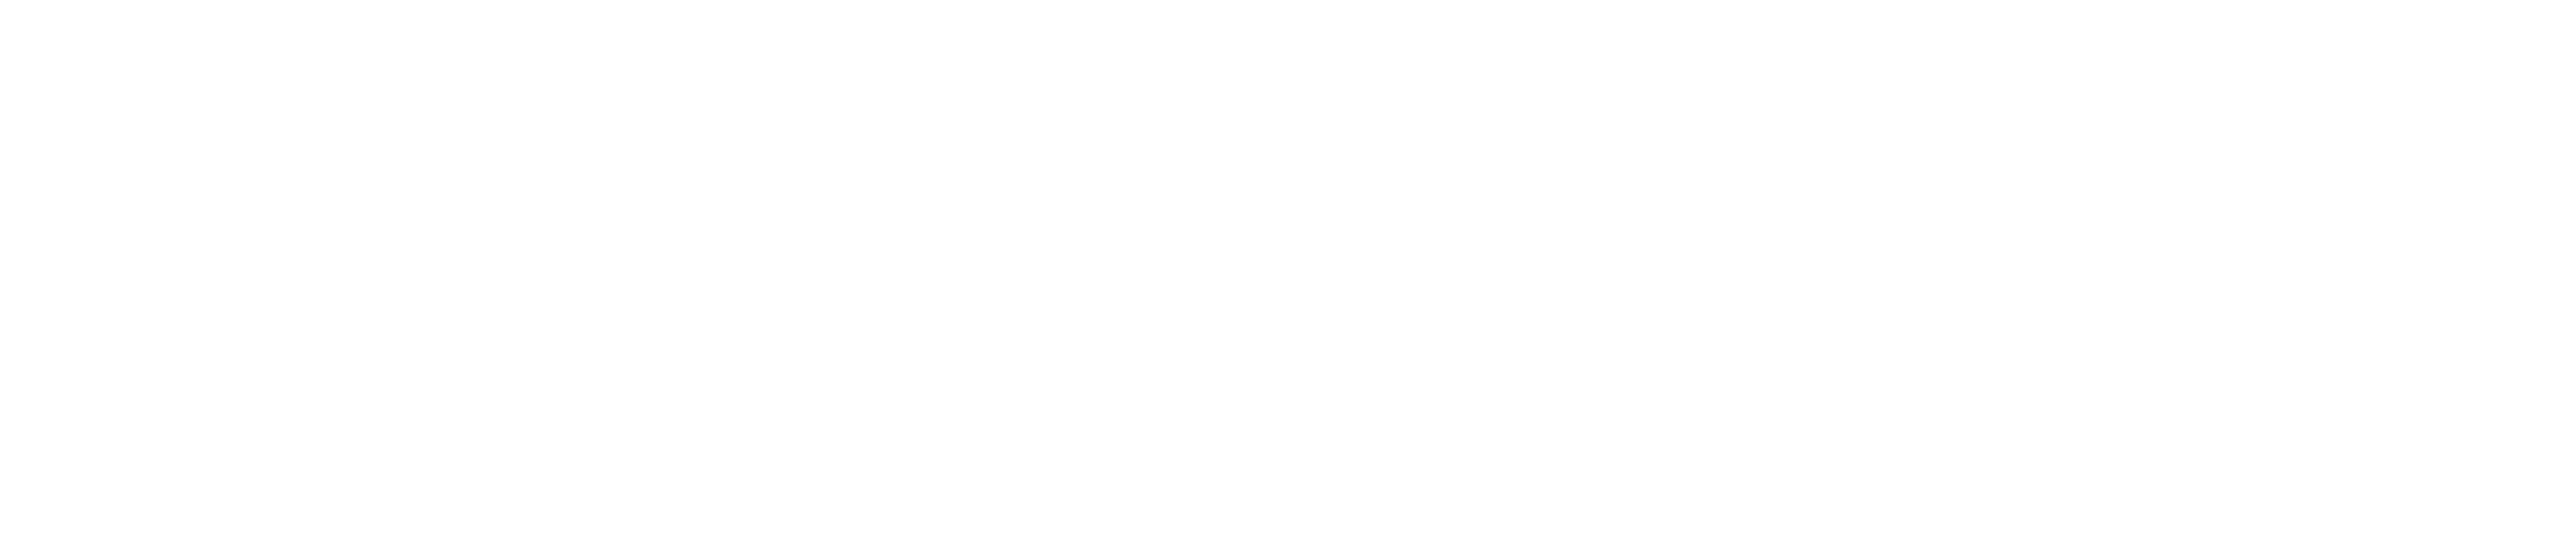 tfd_logo